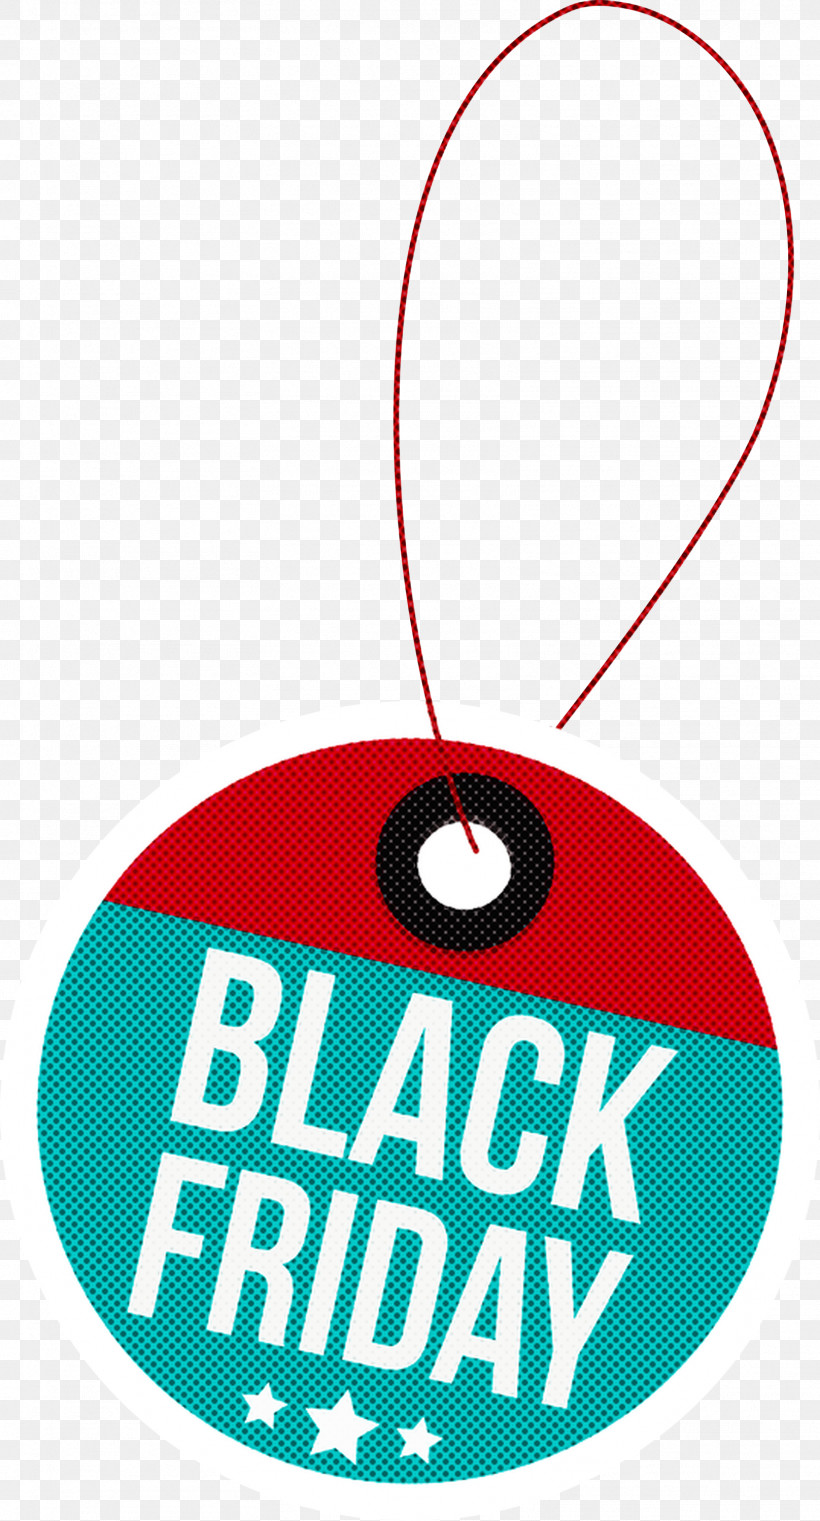 Black Friday Black Friday Discount Black Friday Sale, PNG, 1616x2999px, Black Friday, Black Friday Discount, Black Friday Sale, Geometry, Line Download Free